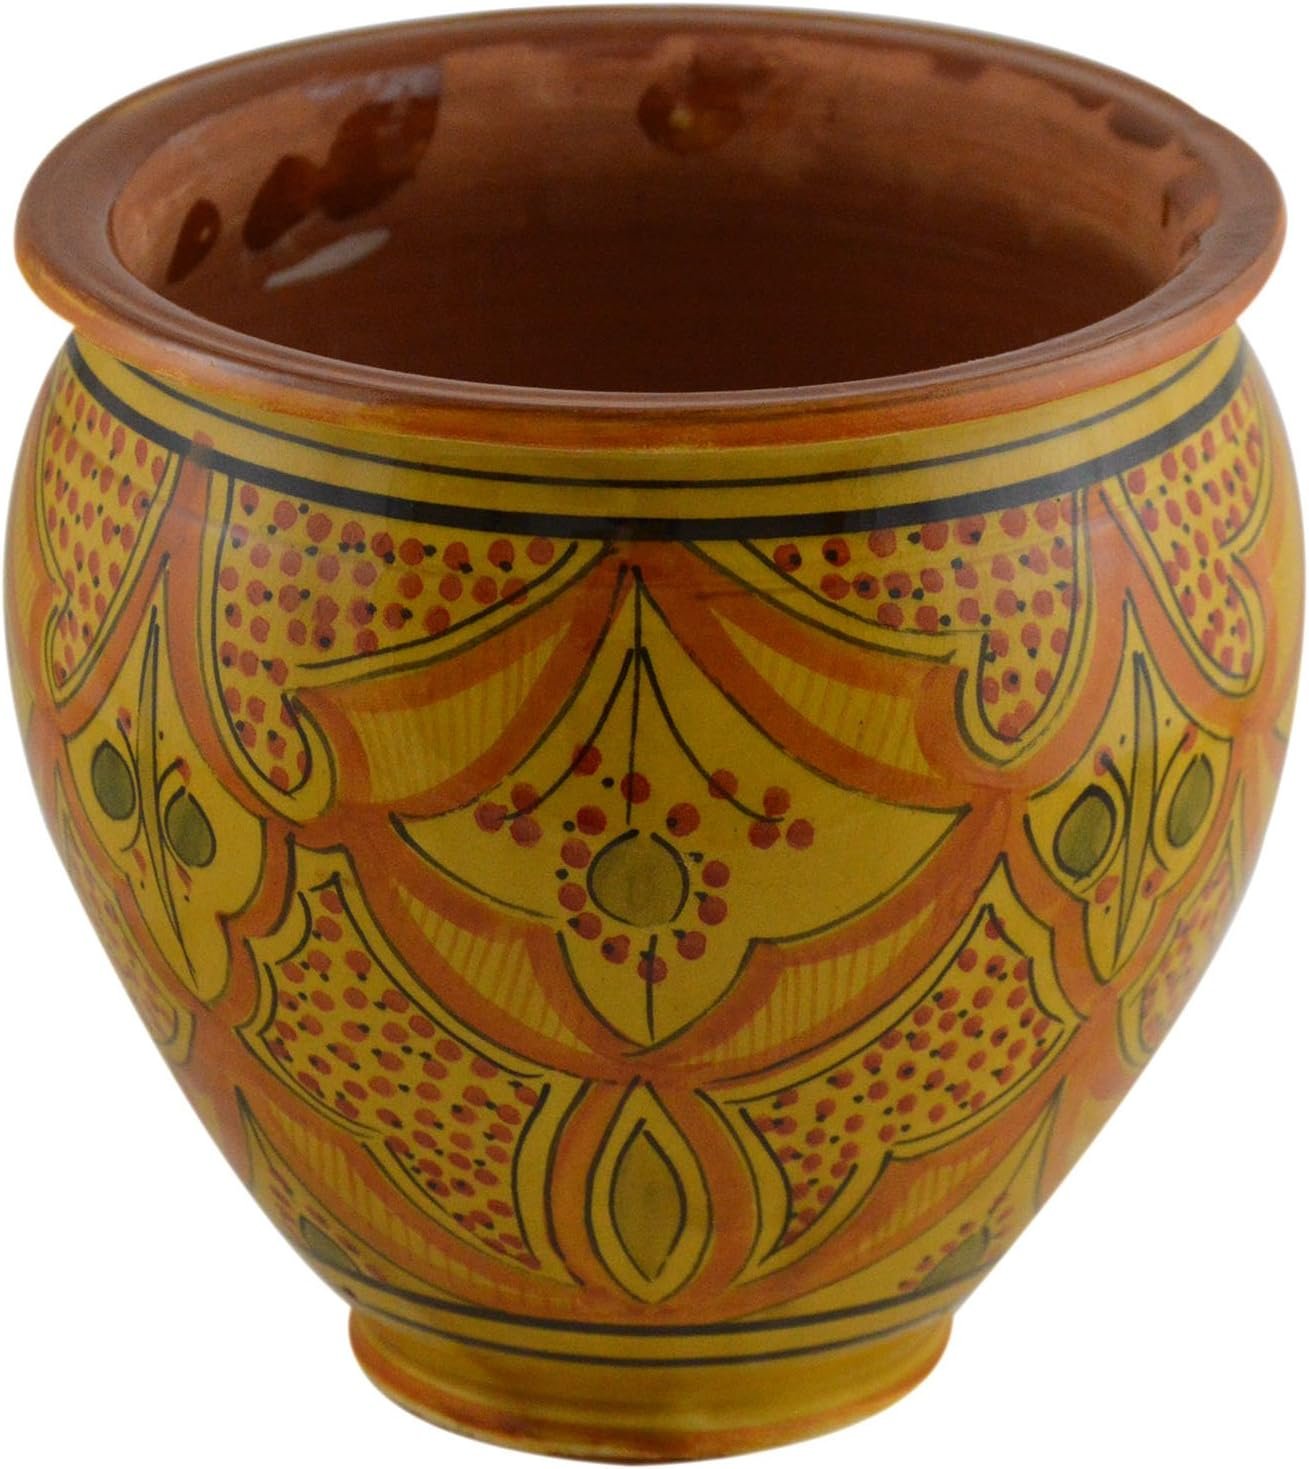 Moroccan ceramic planter